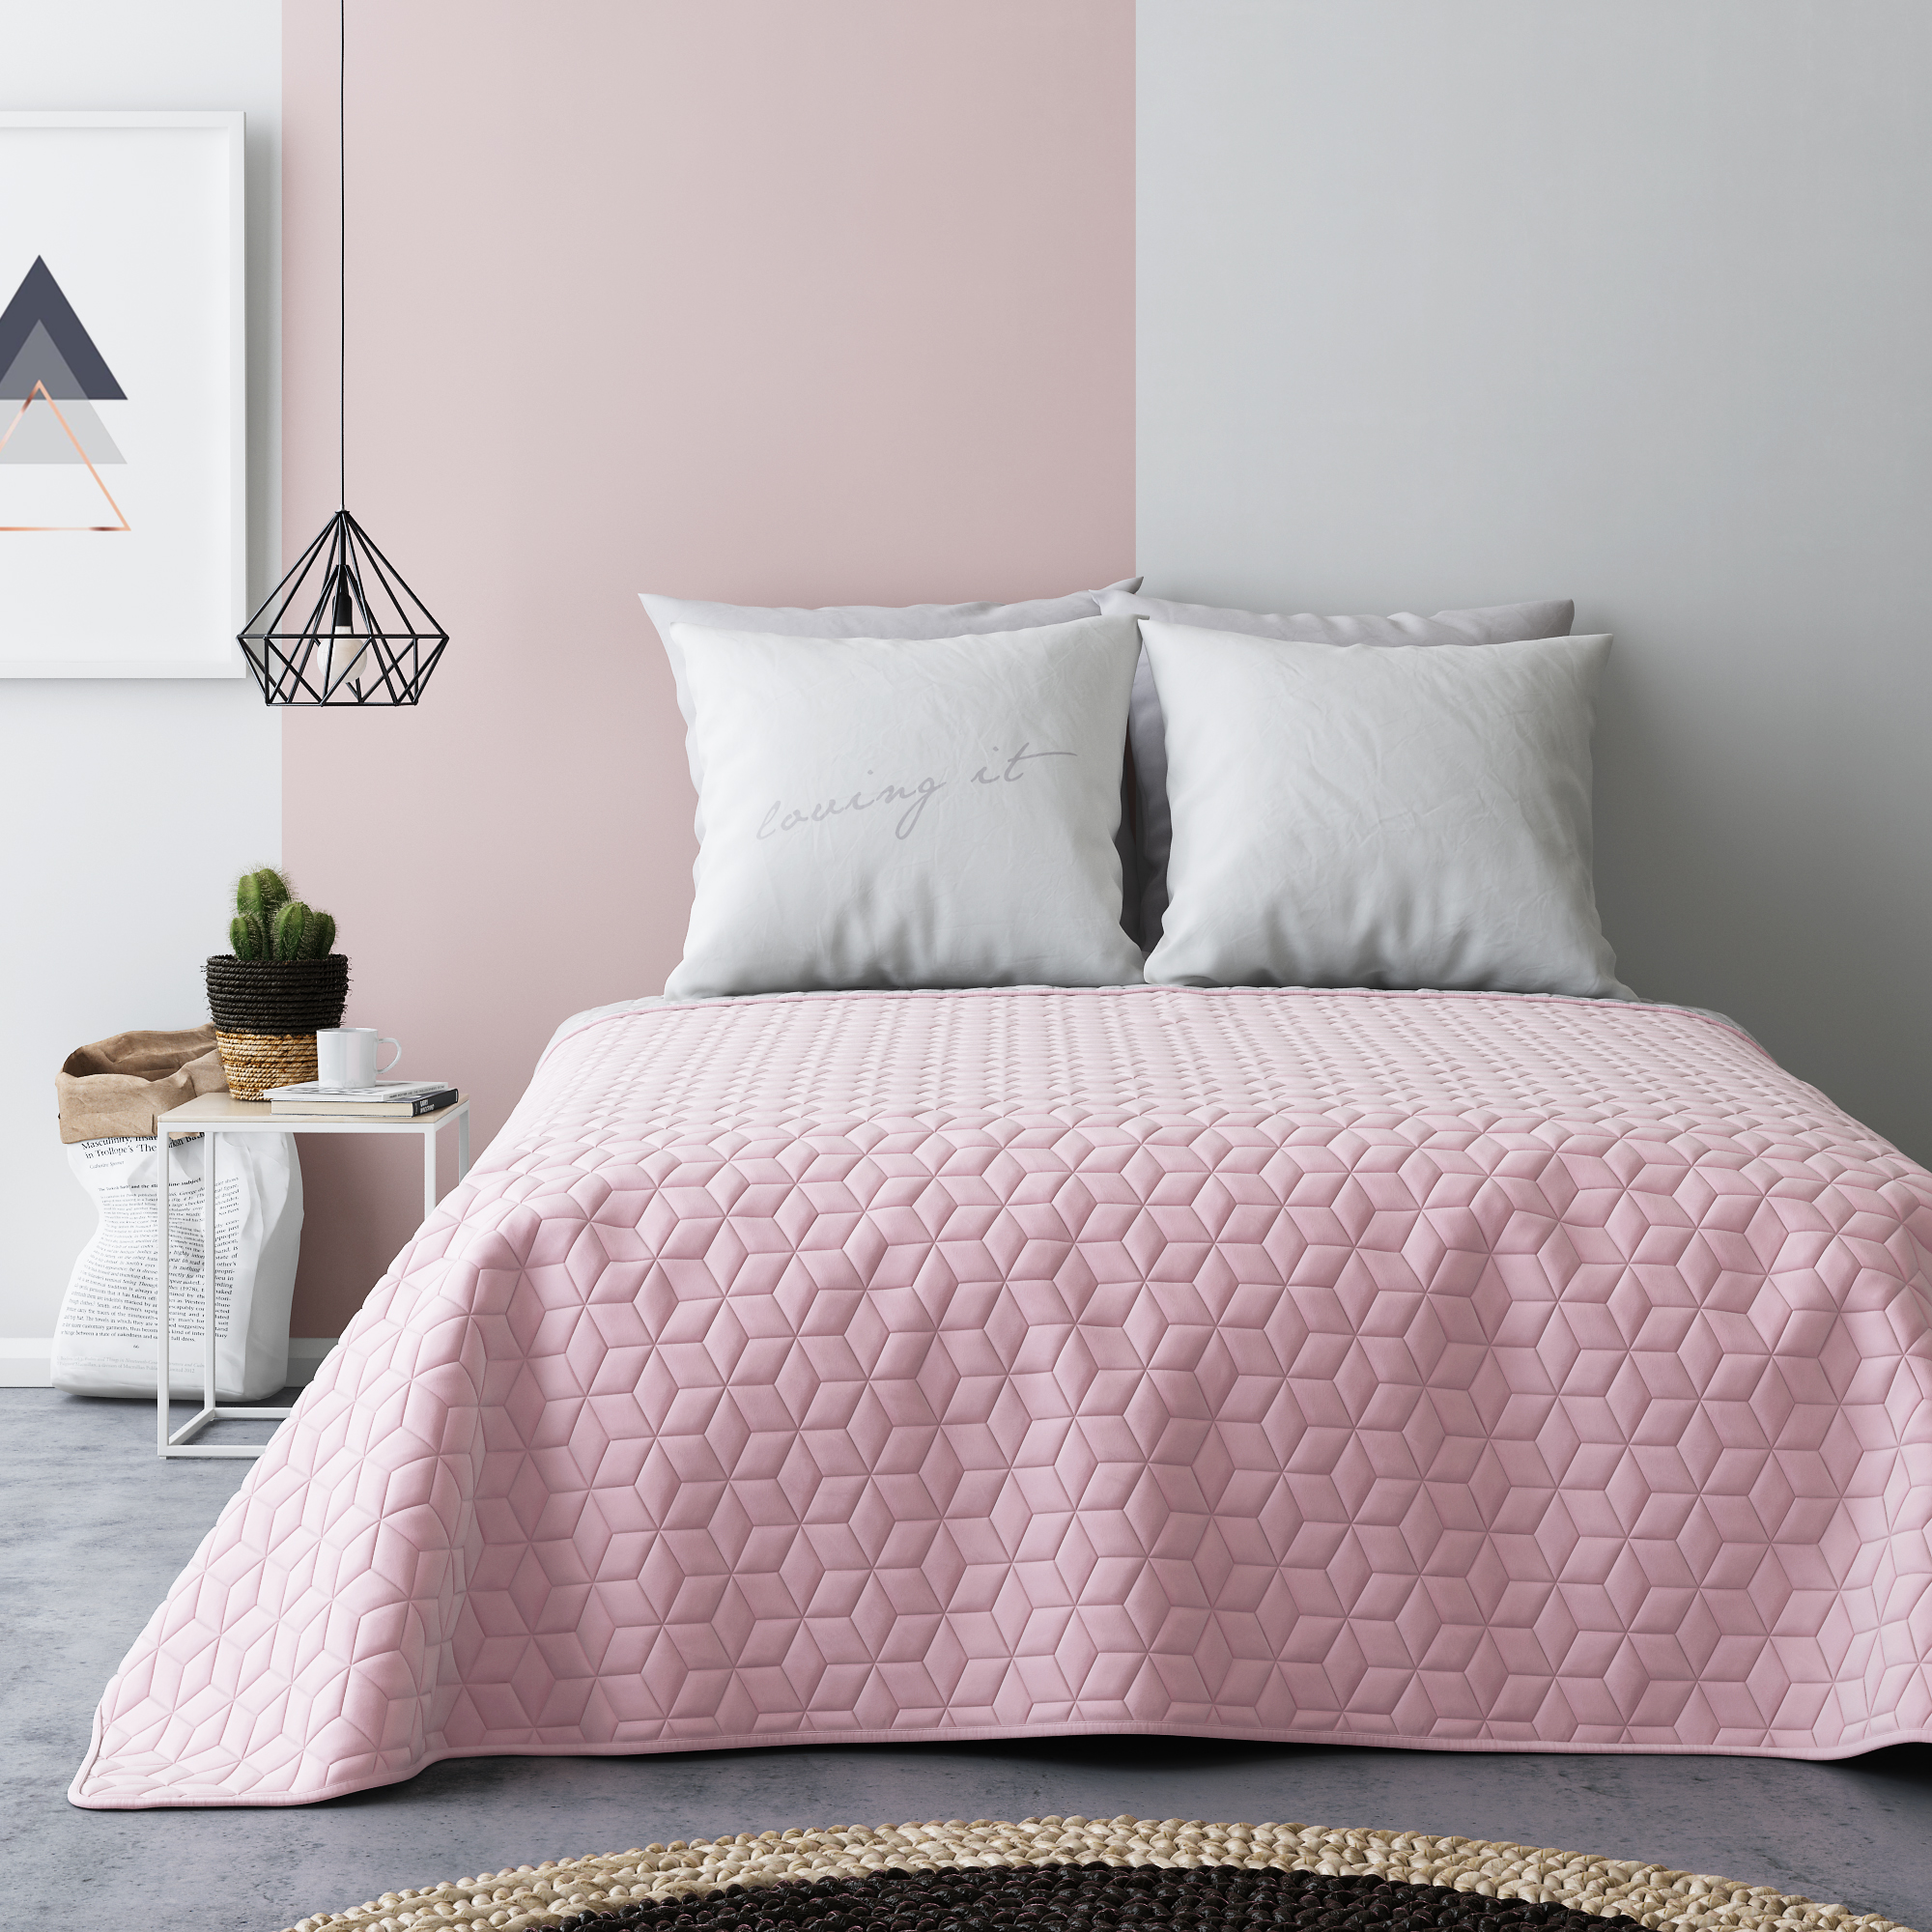 Pikowana francuska narzuta na łóżko w kolorze różowo szarym